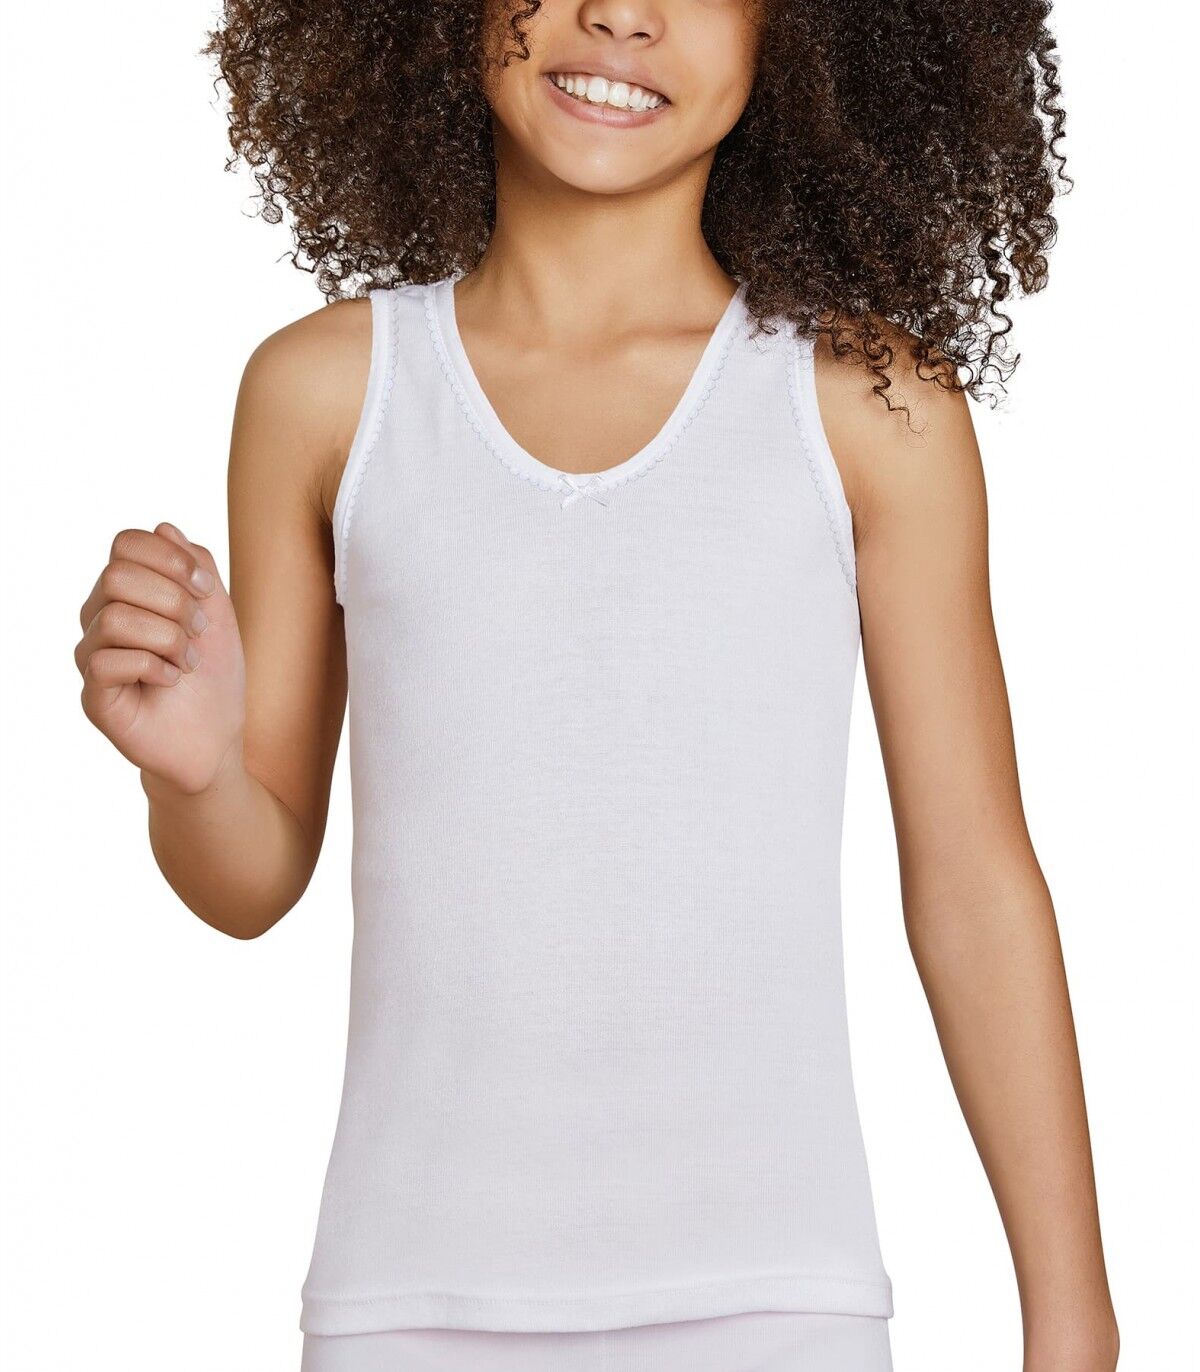 Camiseta infantil Tirantes Ysabel Mora 18306 10 Blanco